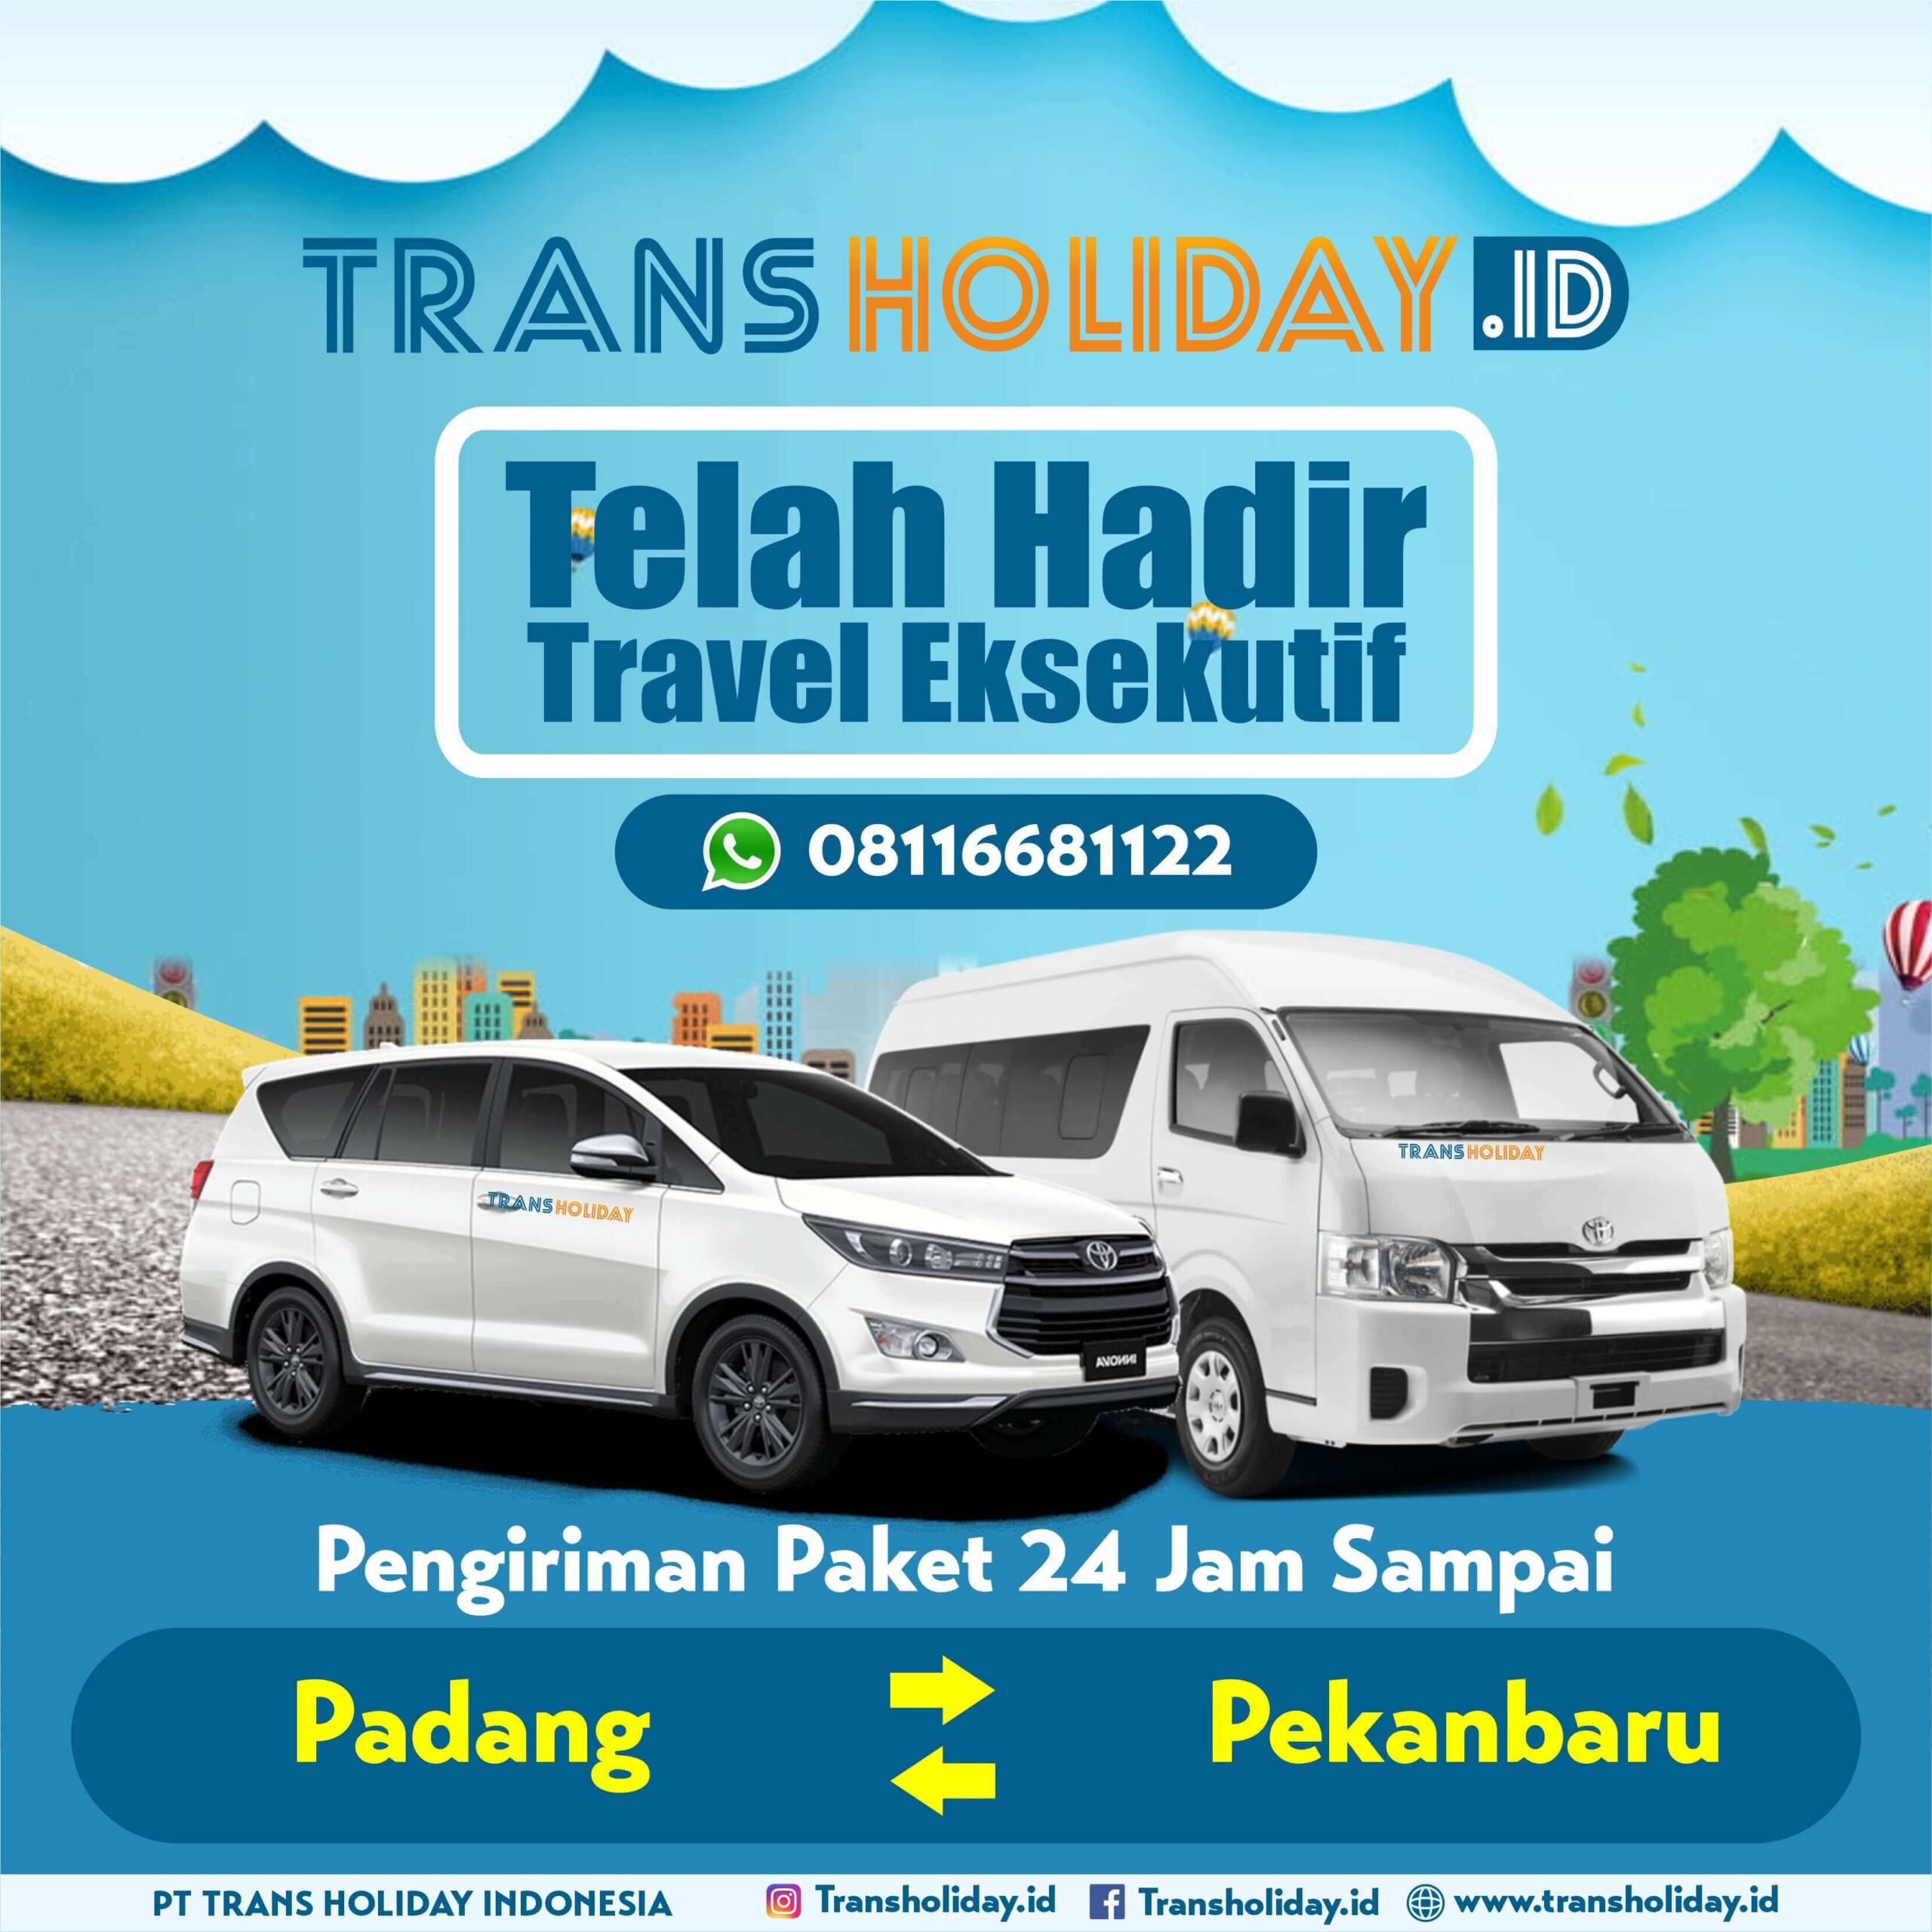 no. travel pekanbaru padang